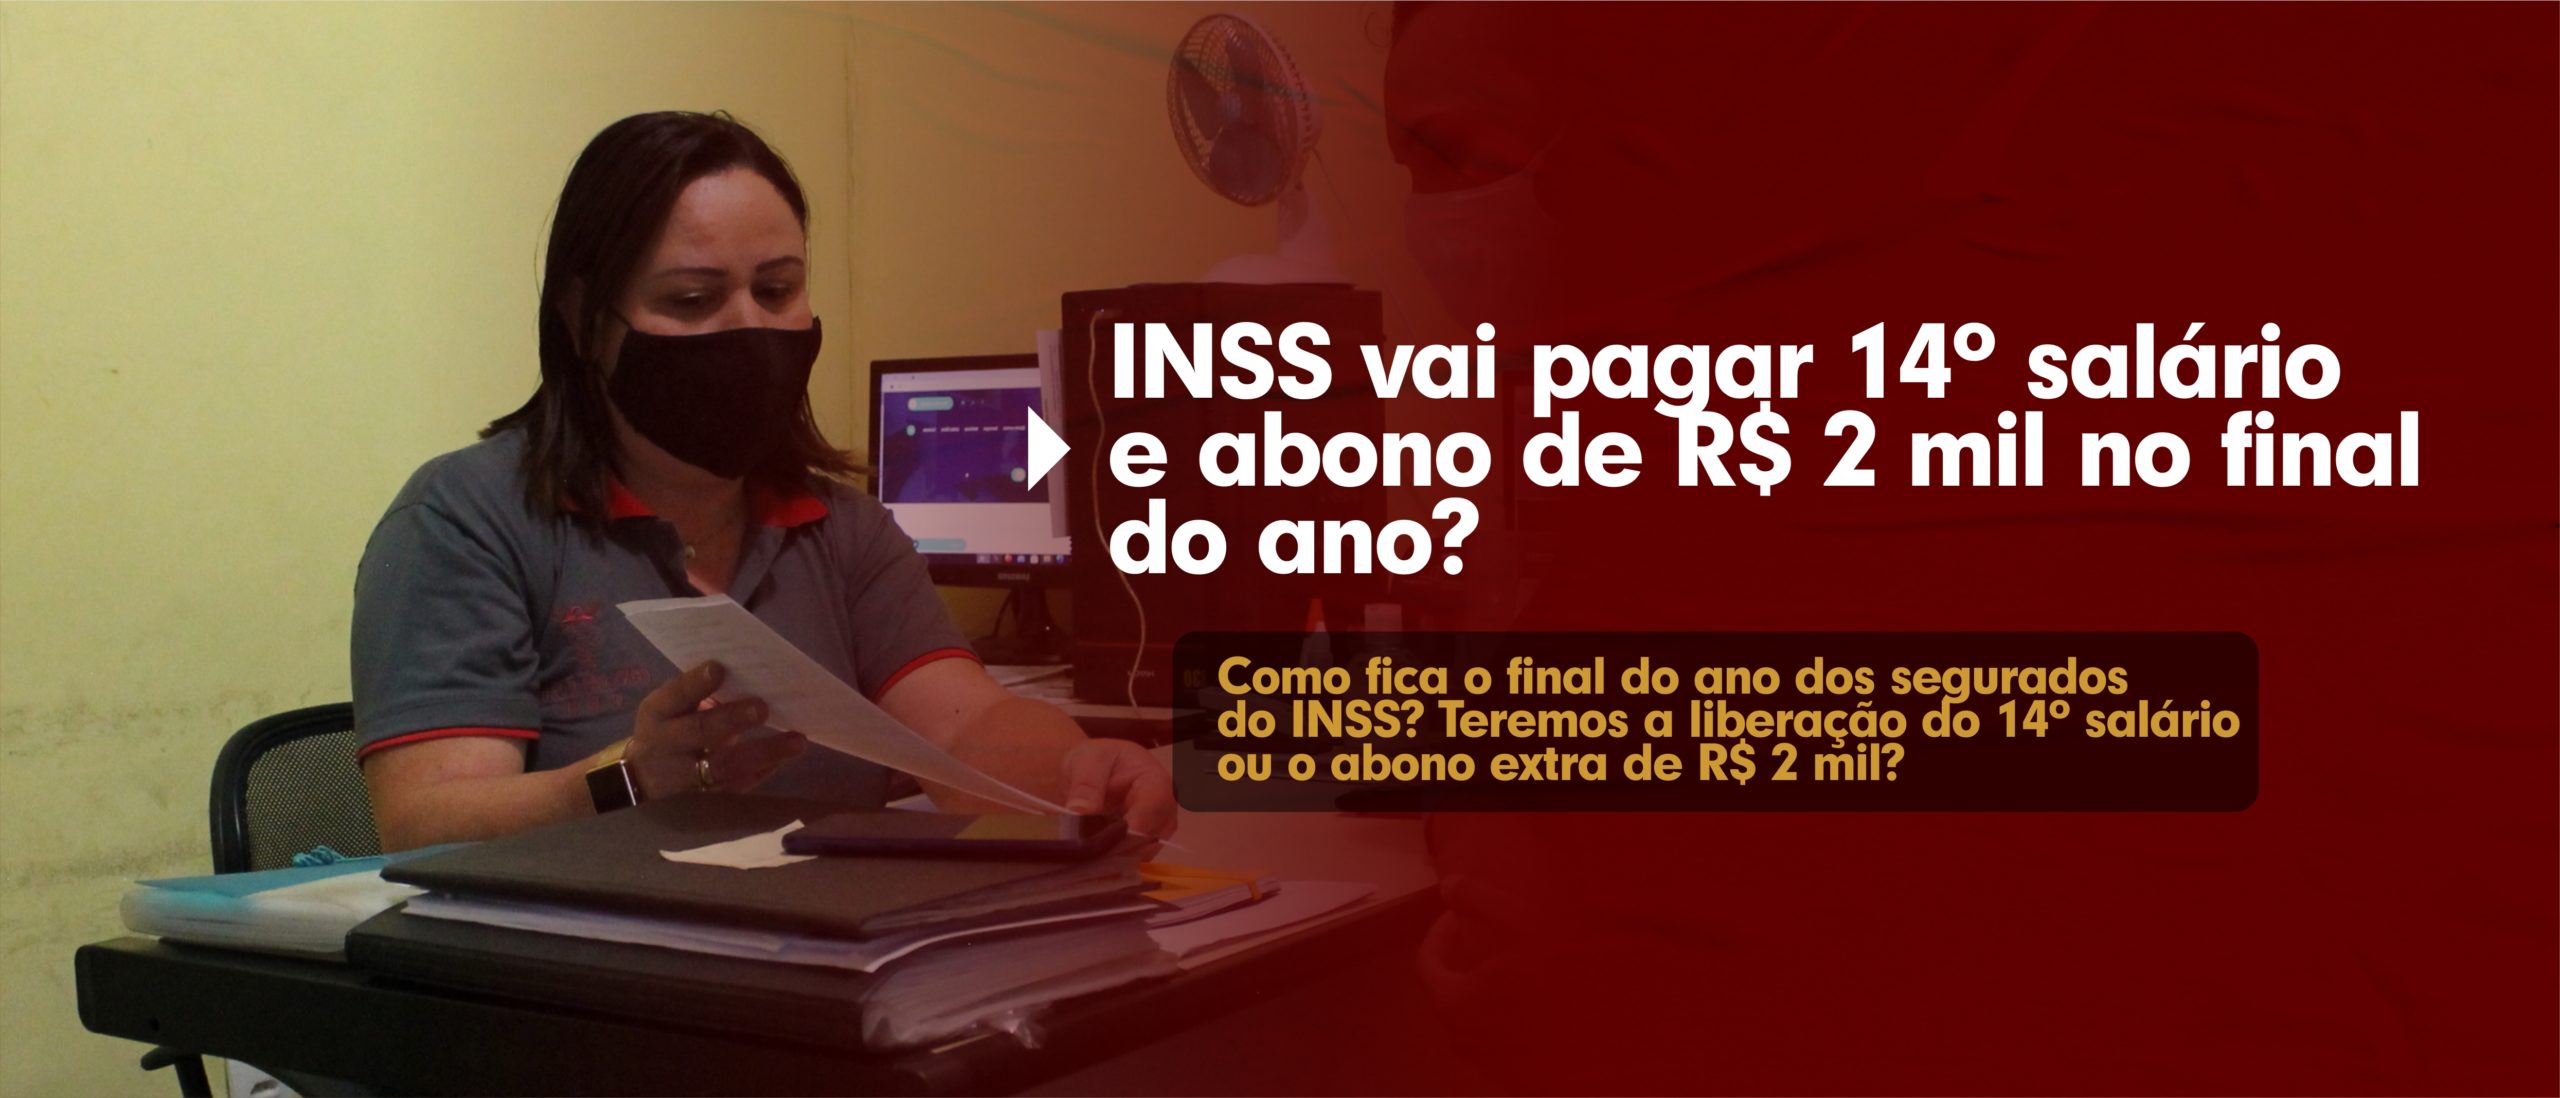 INSS vai pagar 14º salário e abono de R$ 2 mil no final do ano?